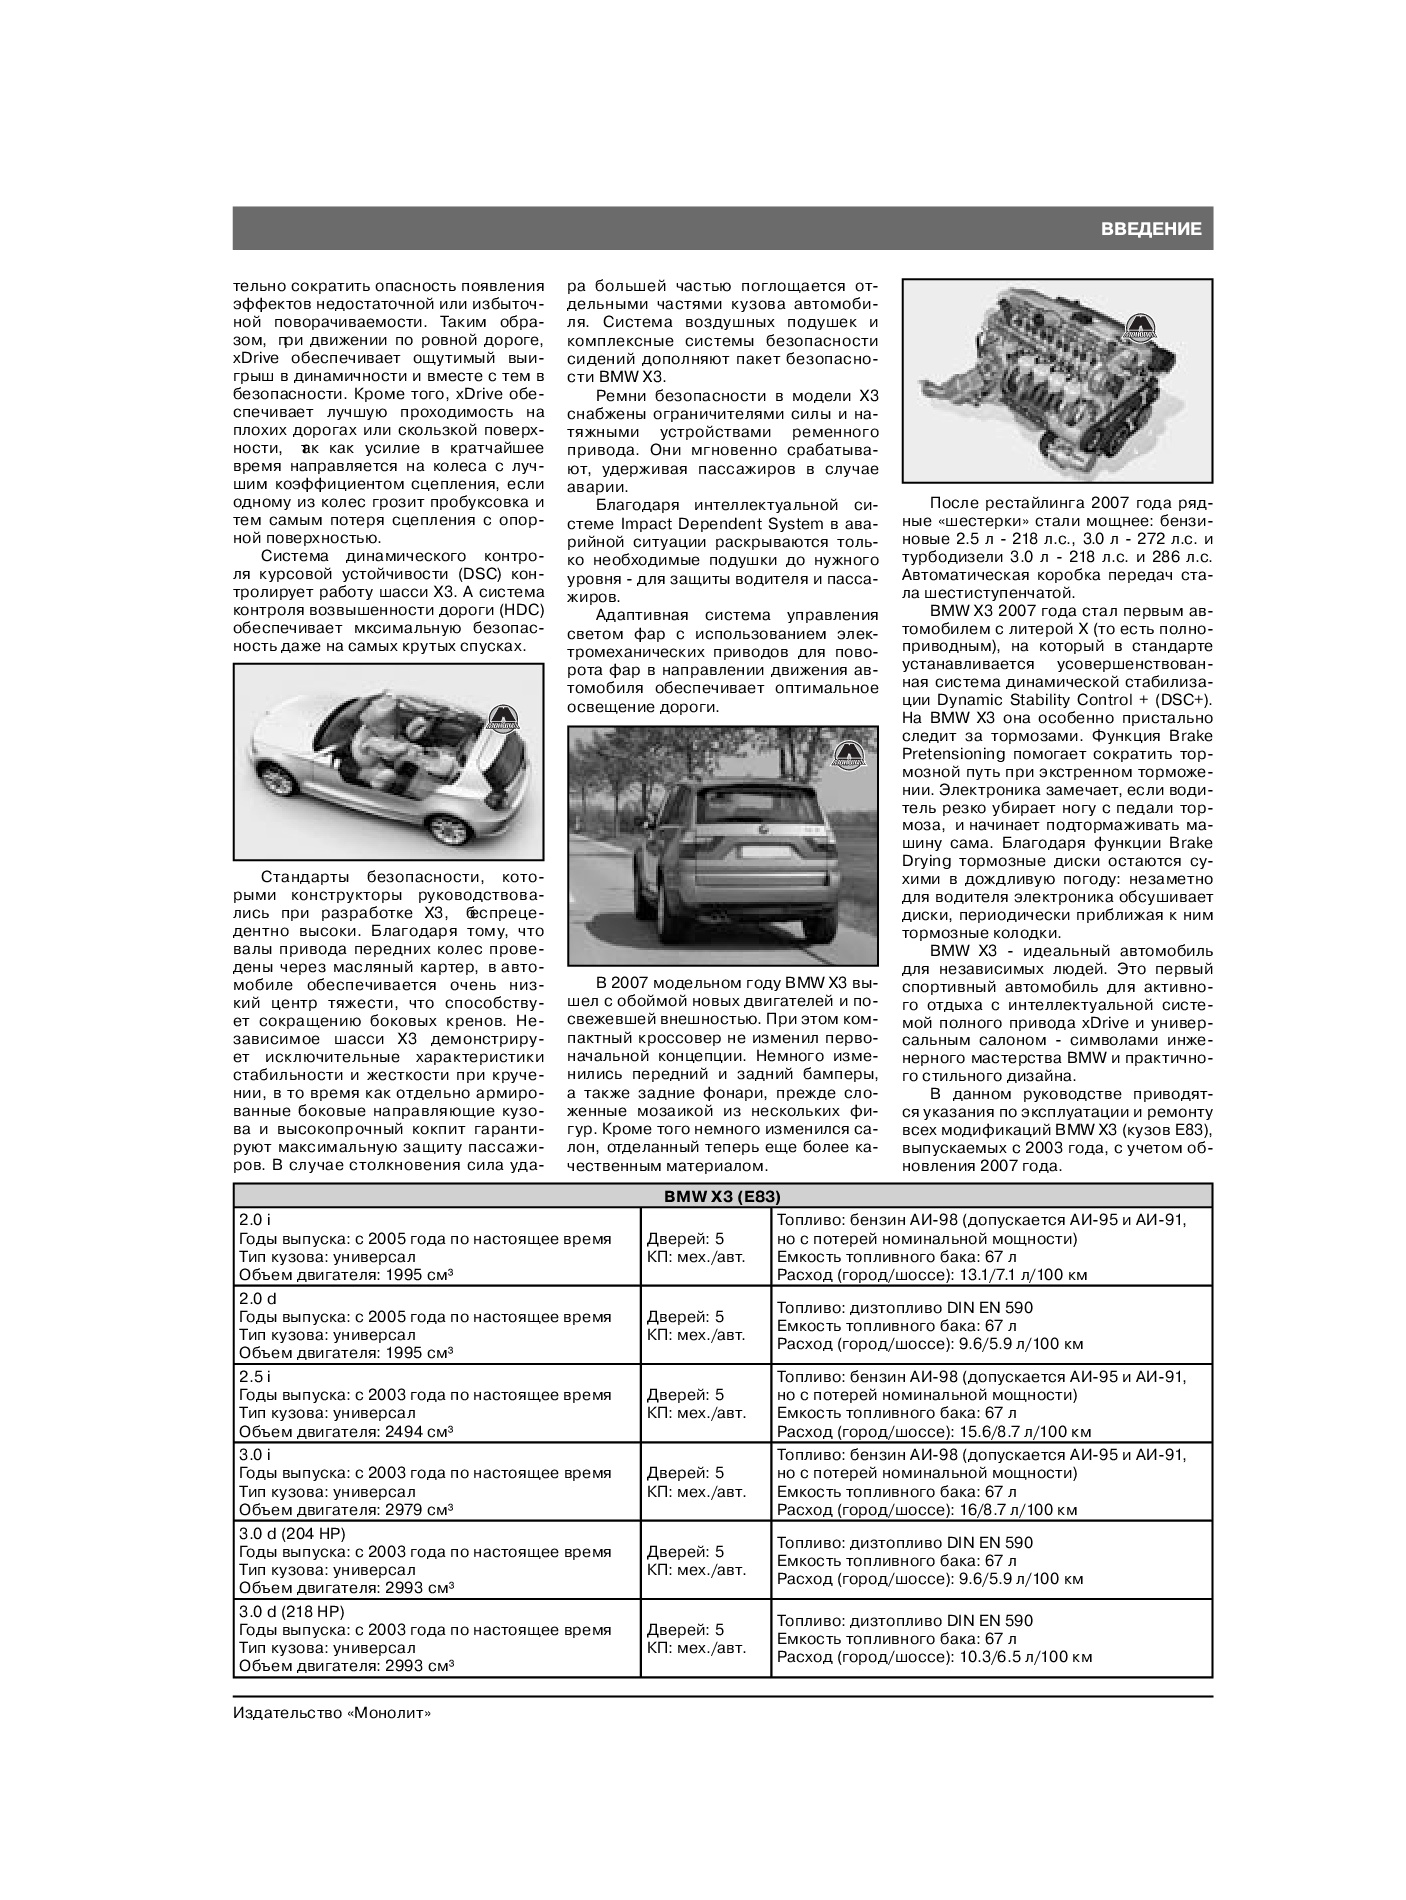 Комплект литературы по ремонту и обслуживанию BMW X3 с 2003 года выпуска